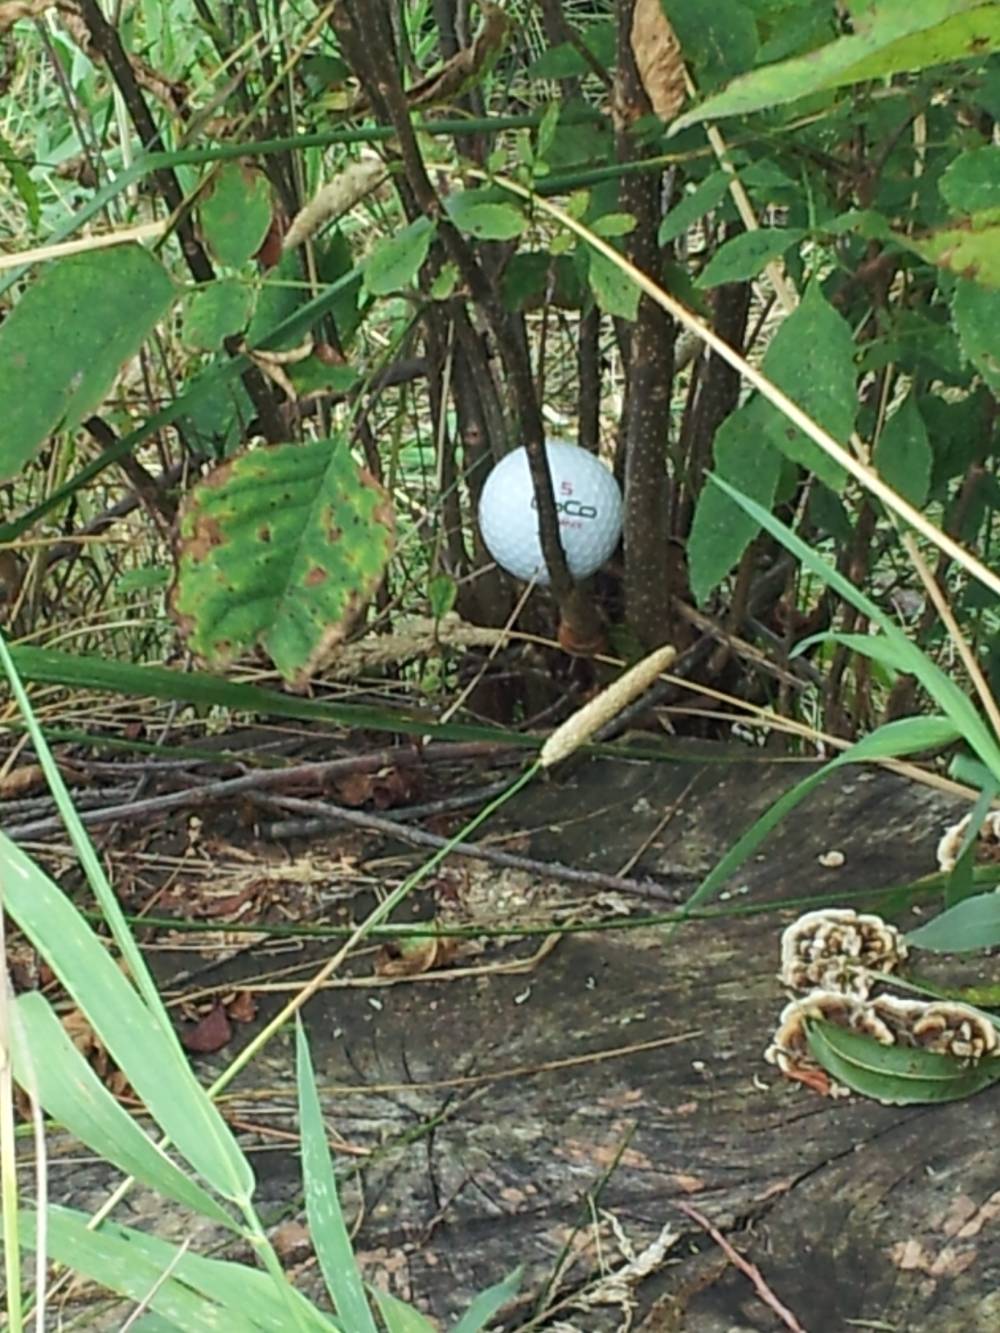 Ball stuck in shrubs